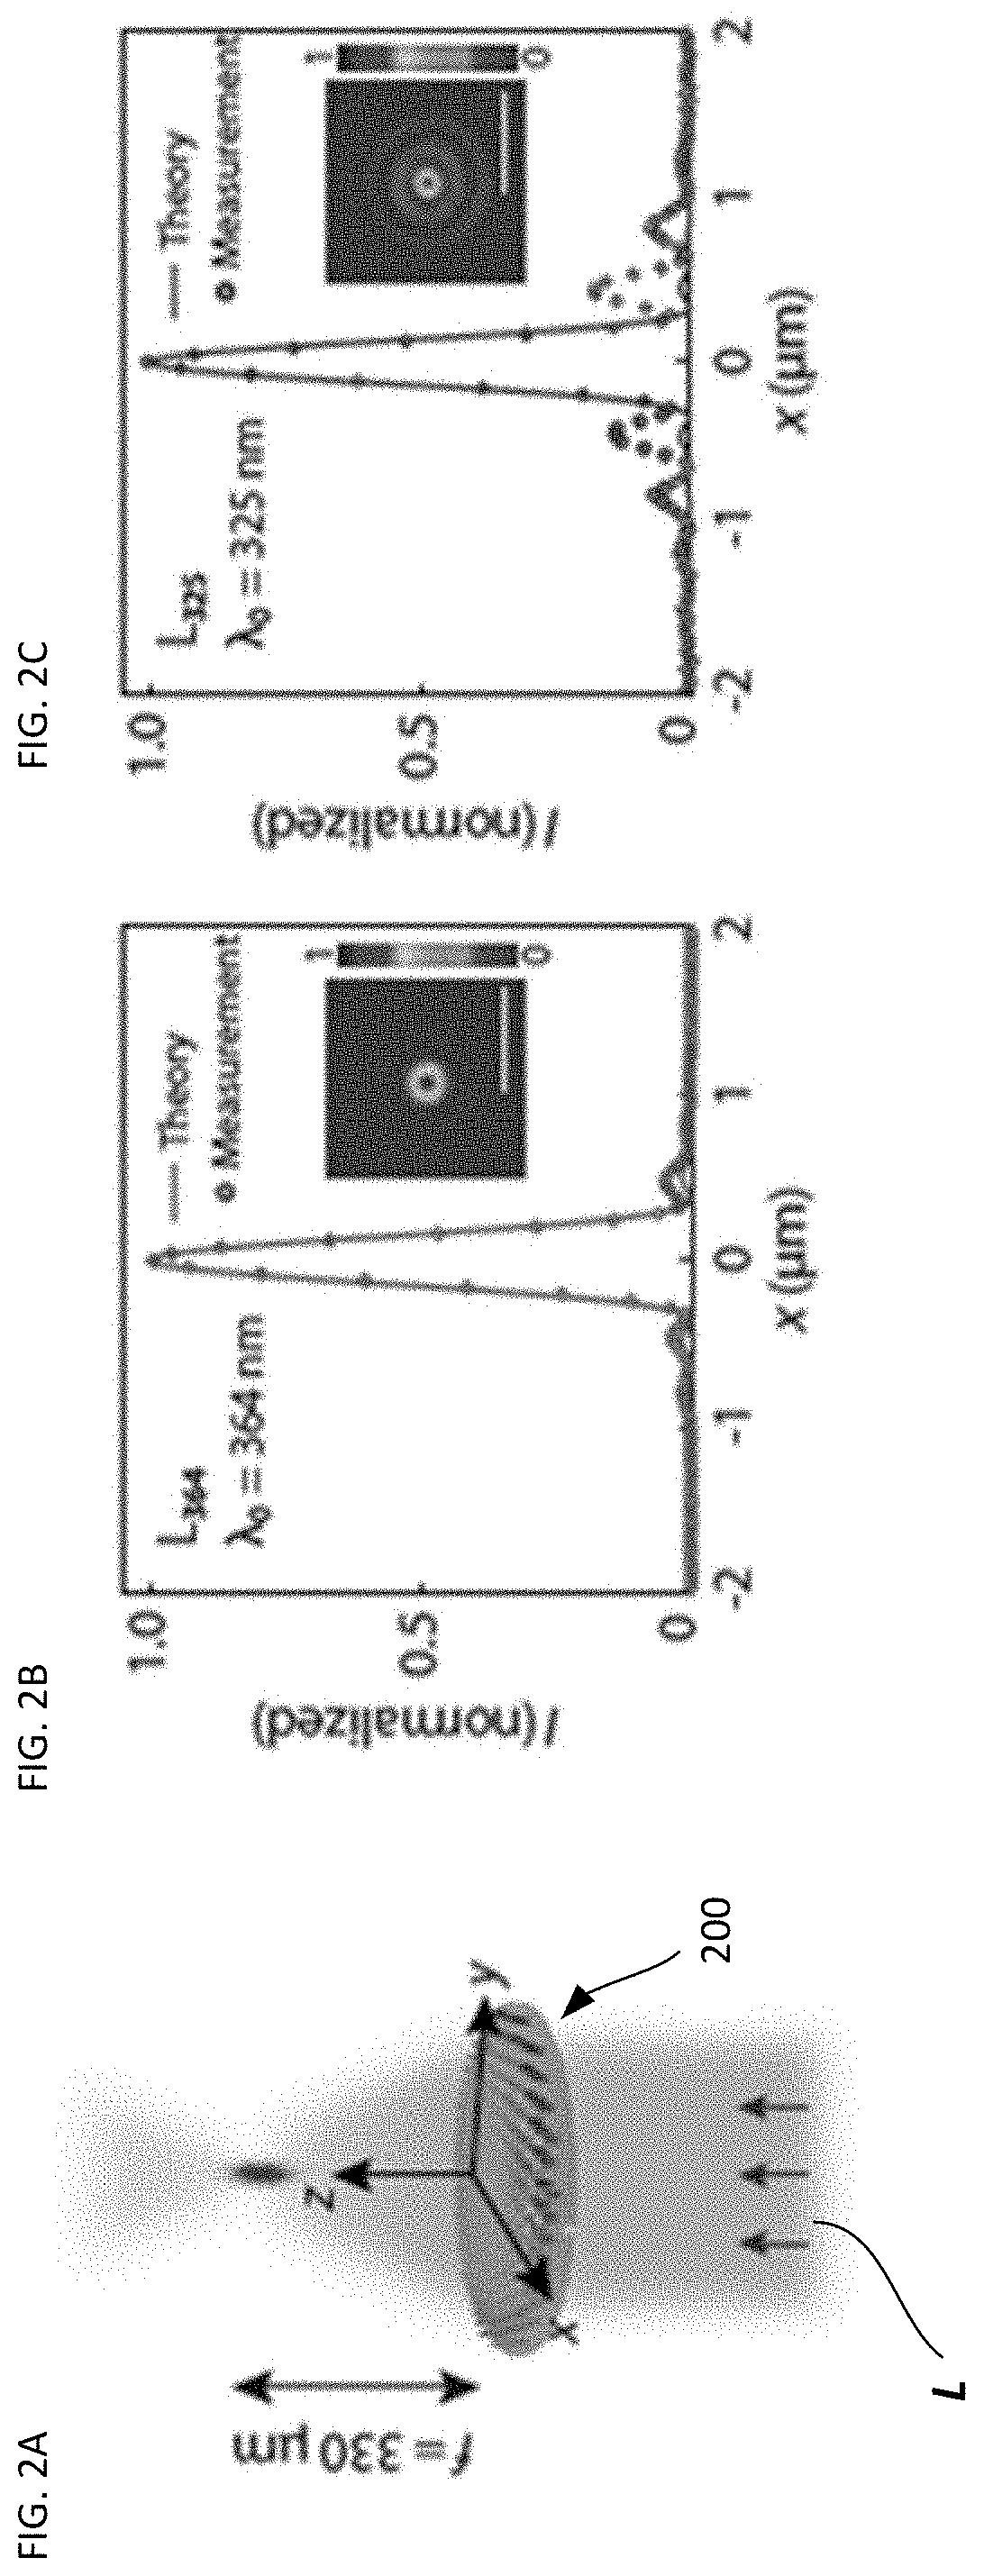 Low-loss metasurface optics for deep UV